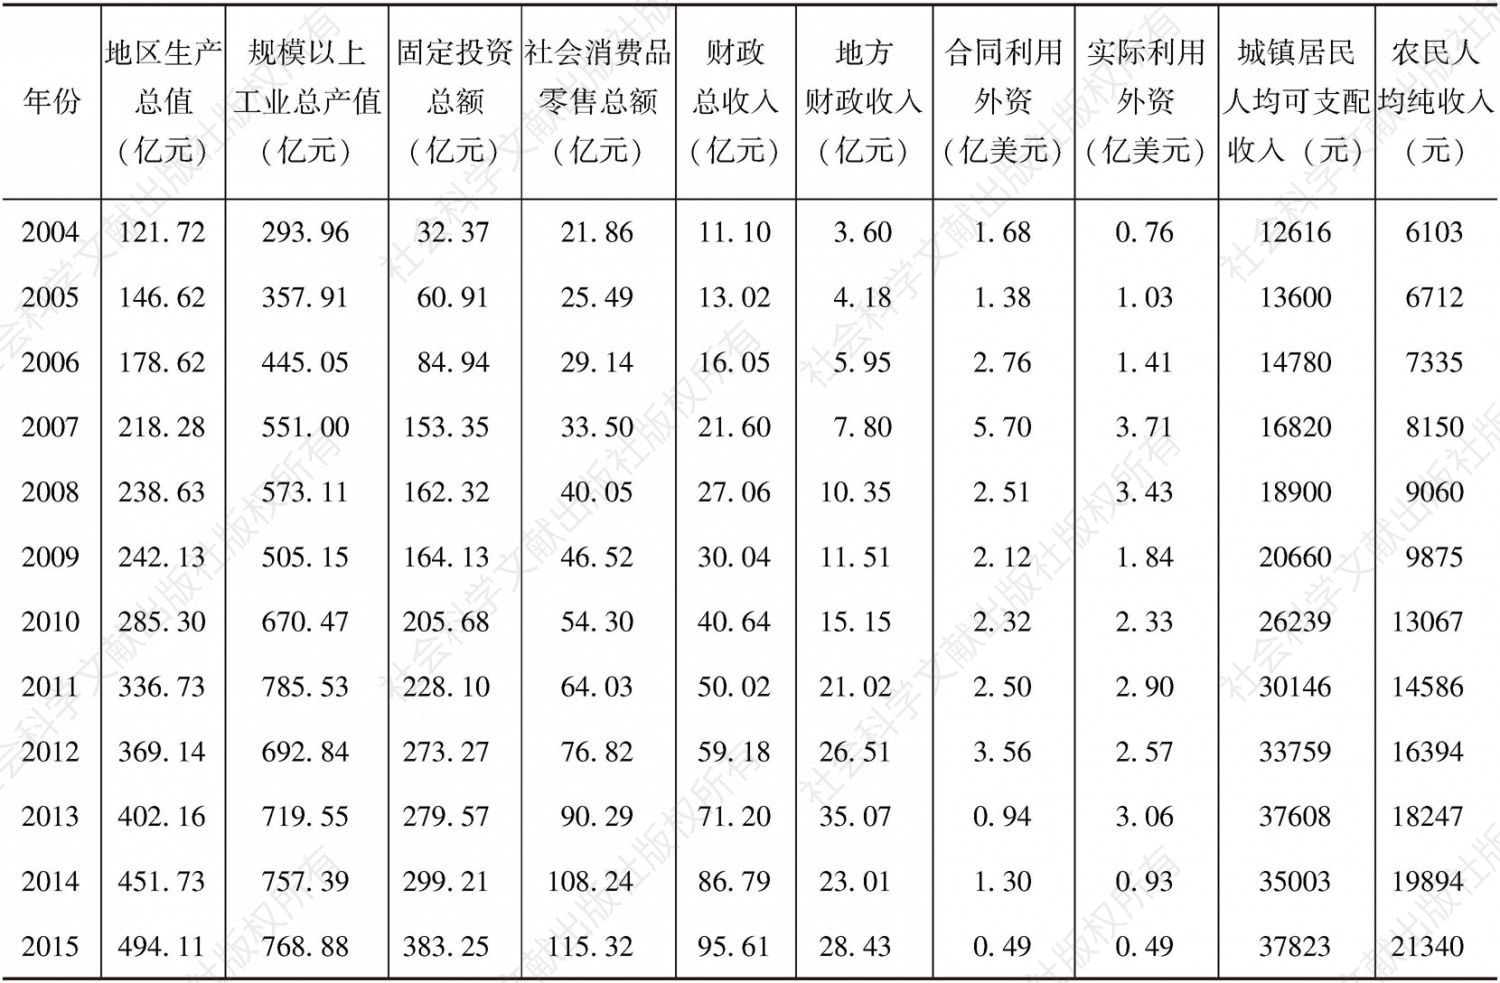 表5-3 2004～2015年集美区经济发展主要指标情况表